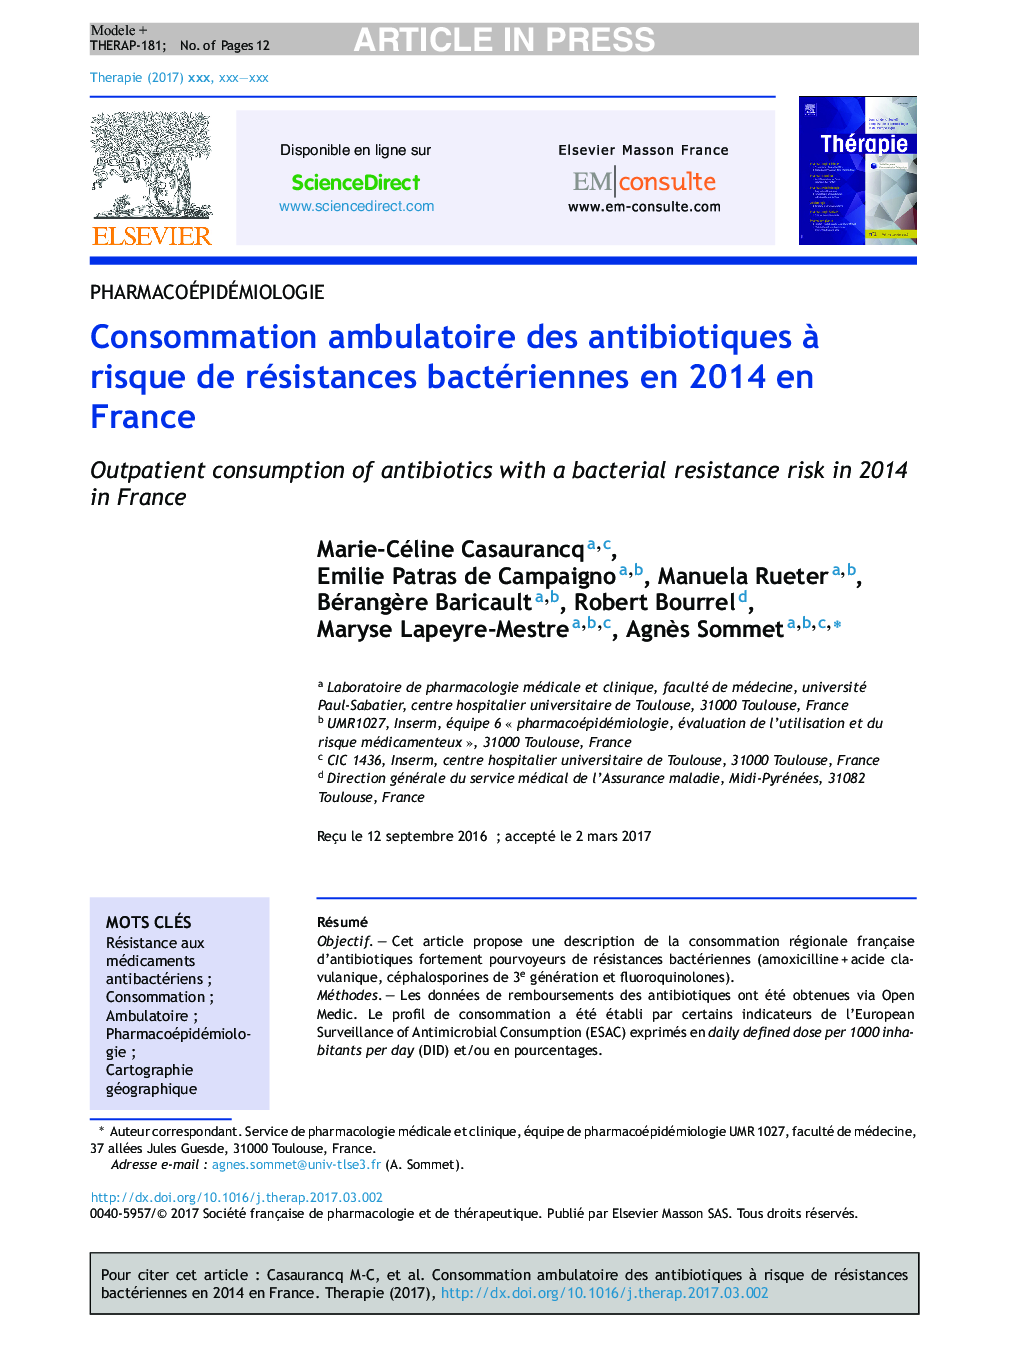 Consommation ambulatoire des antibiotiques Ã  risque de résistances bactériennes en 2014Â en France